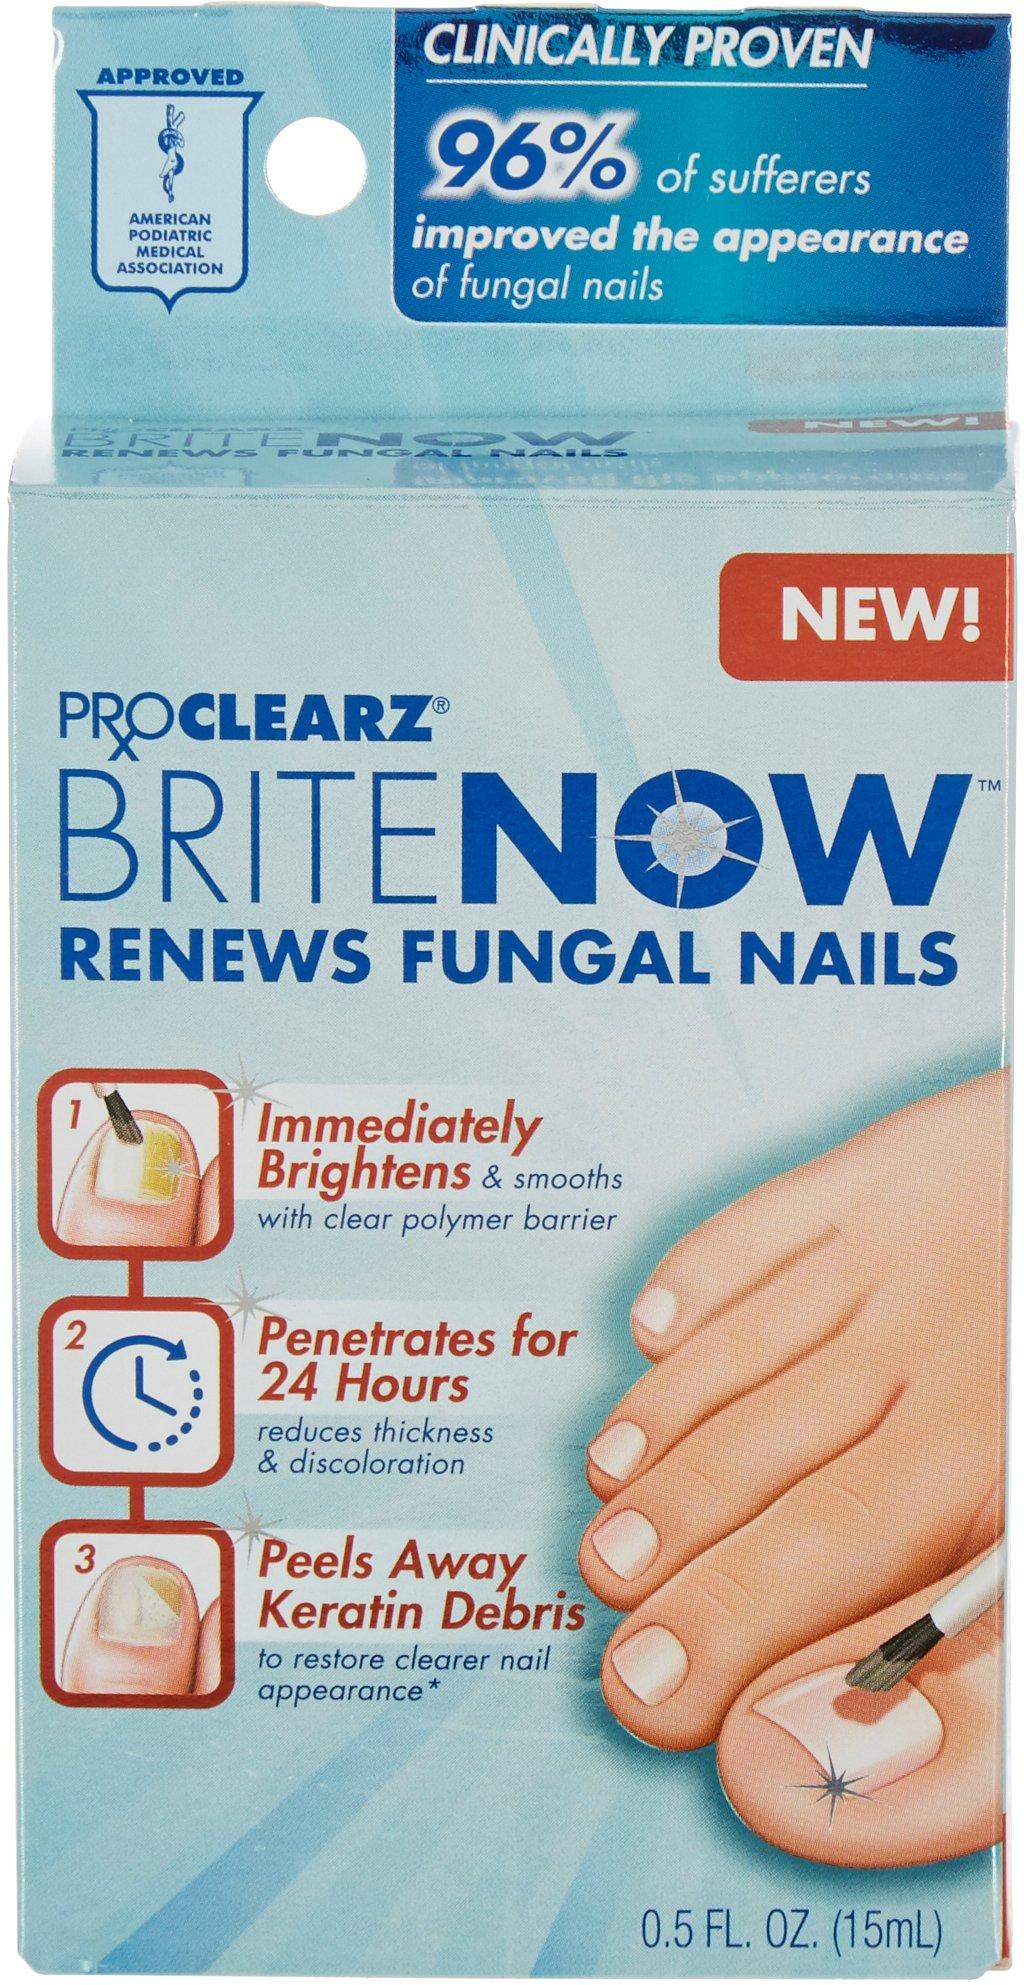 Brite Now Fungal Nail Renewal